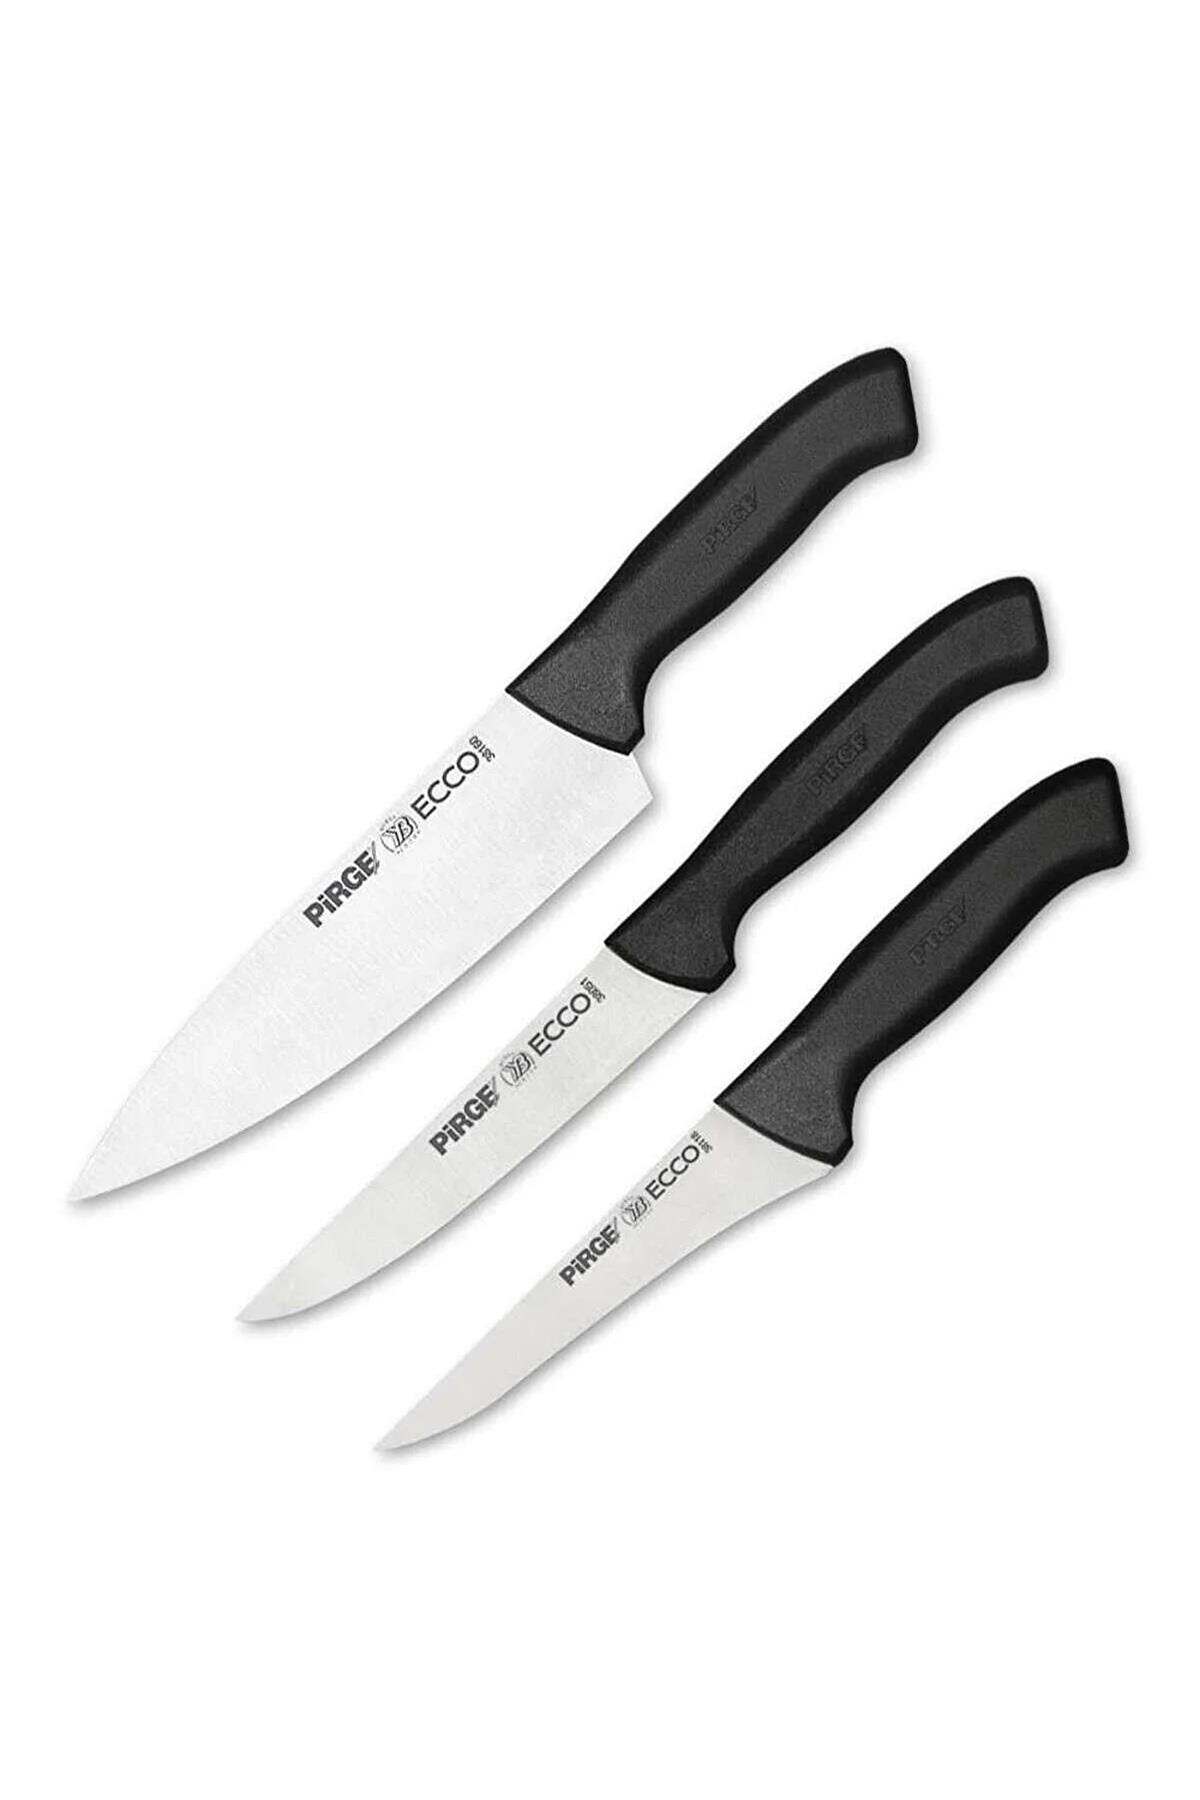 Ecco Şef Baba Bıçak Seti, Gastronomi Bıçak Seti 3 Parça